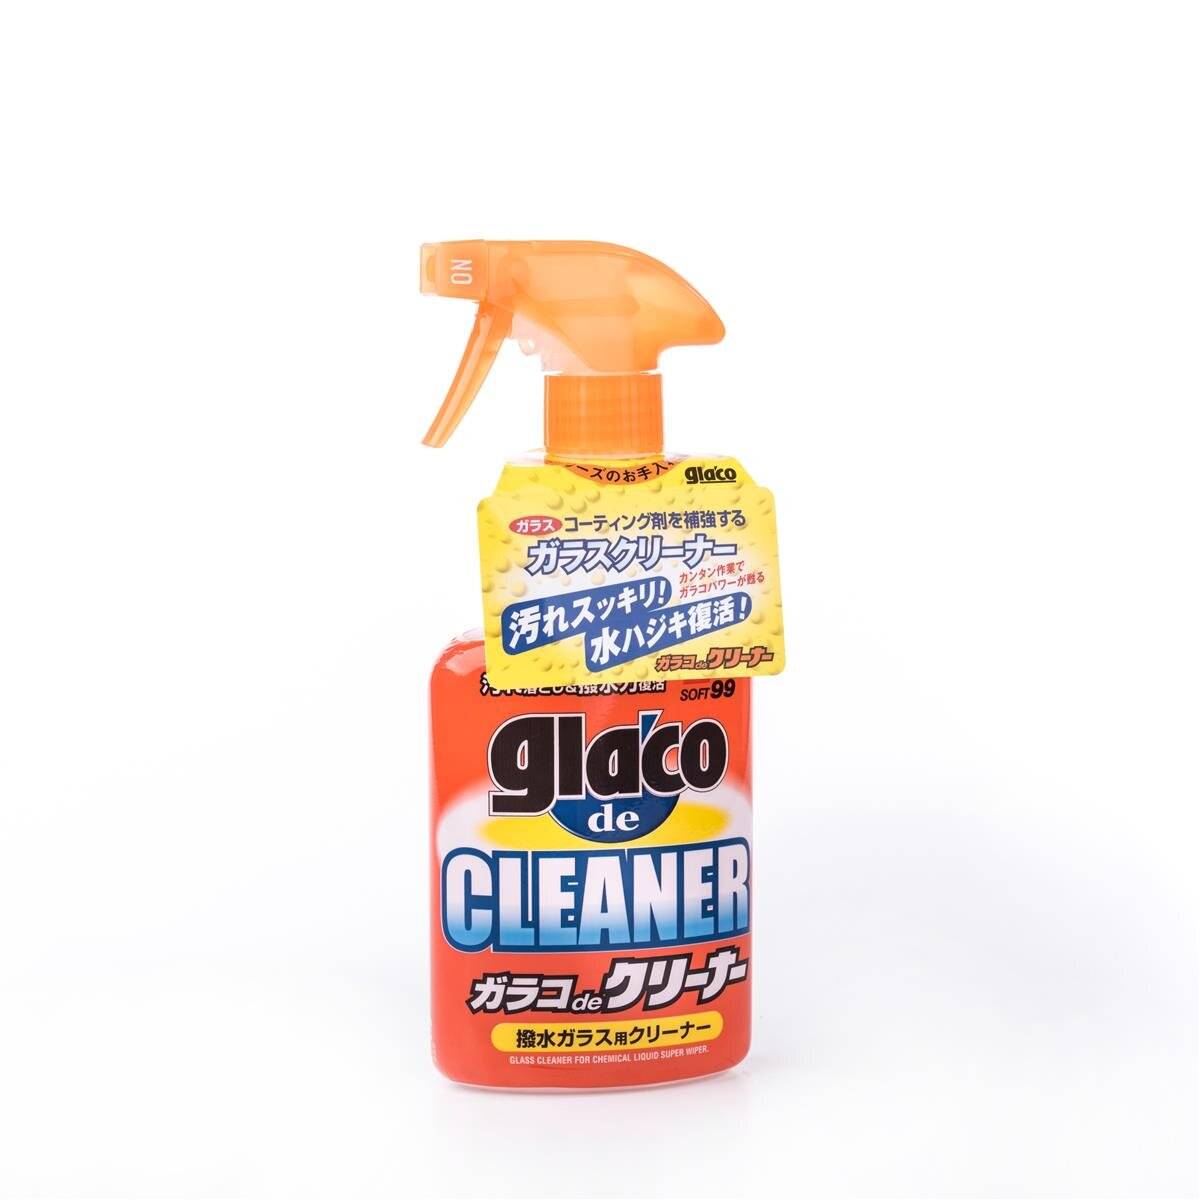 Glaco Blave, liquid wiper for glass and plastic, 70 ml - Soft99